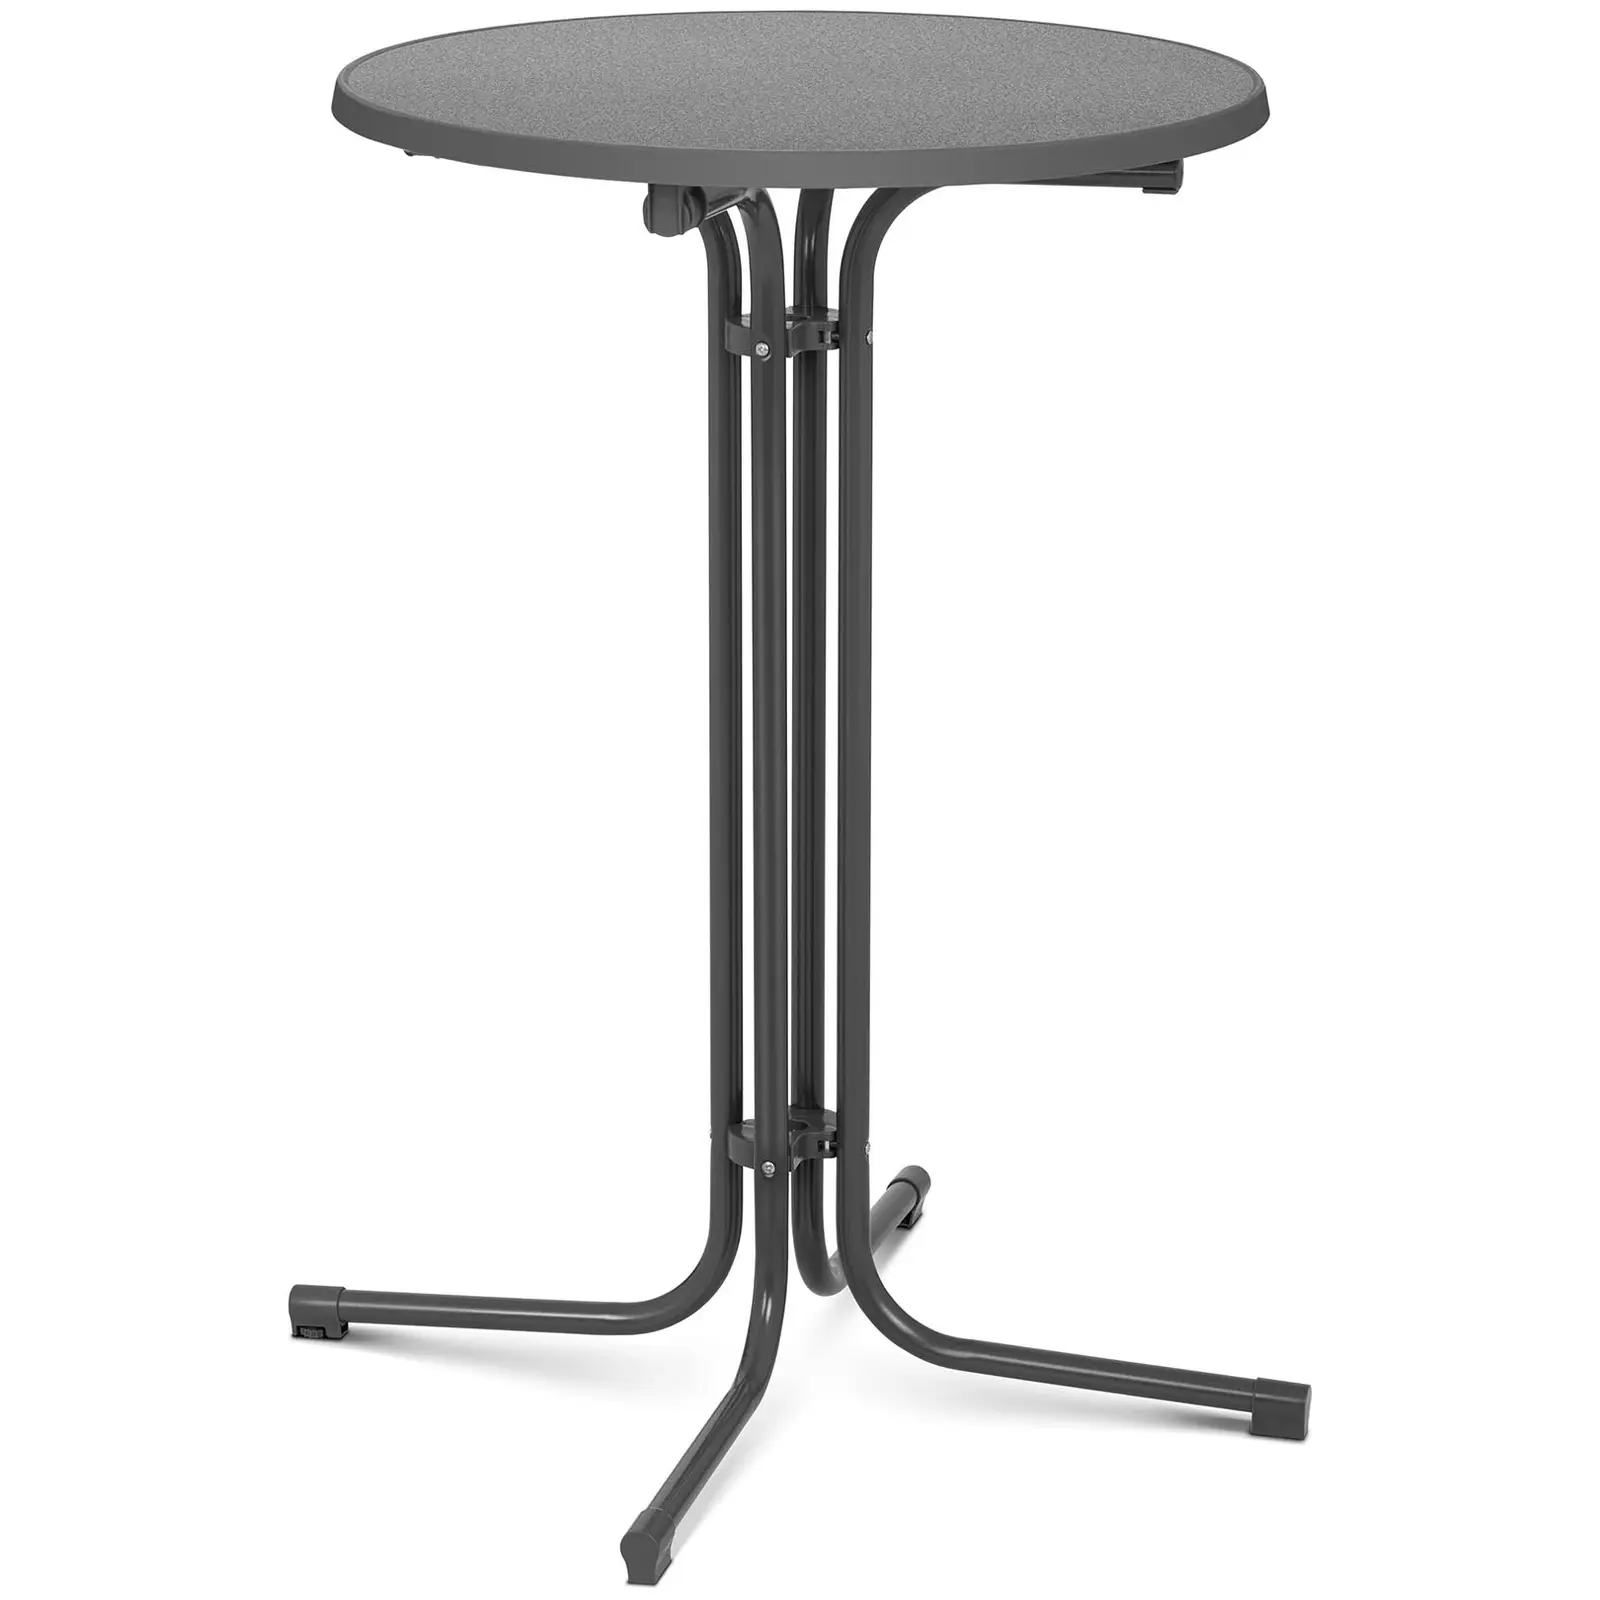 Visoki barski stol - Ø 70 cm - sklopivi - sivi